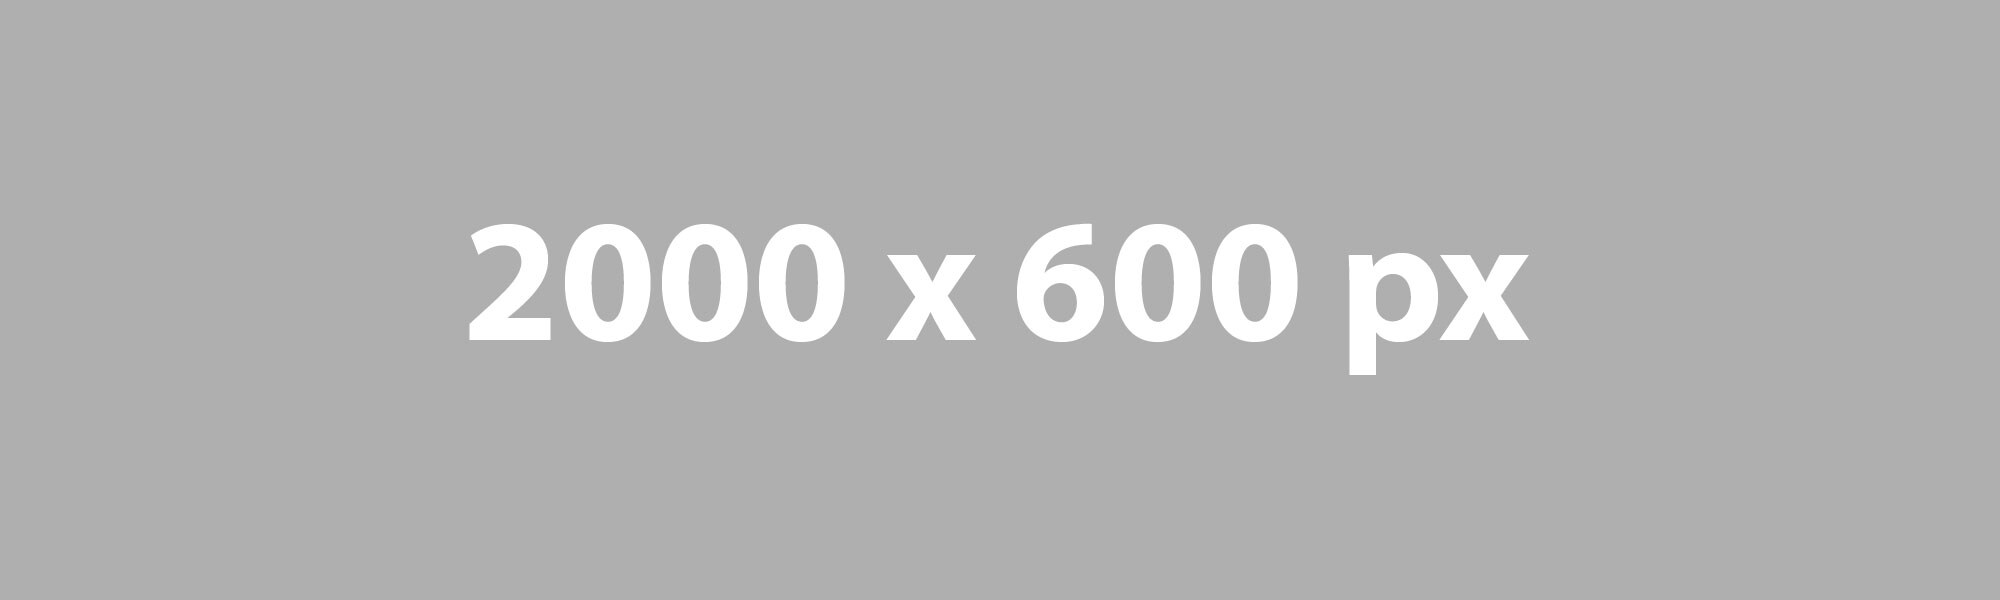 FPO 2000x600